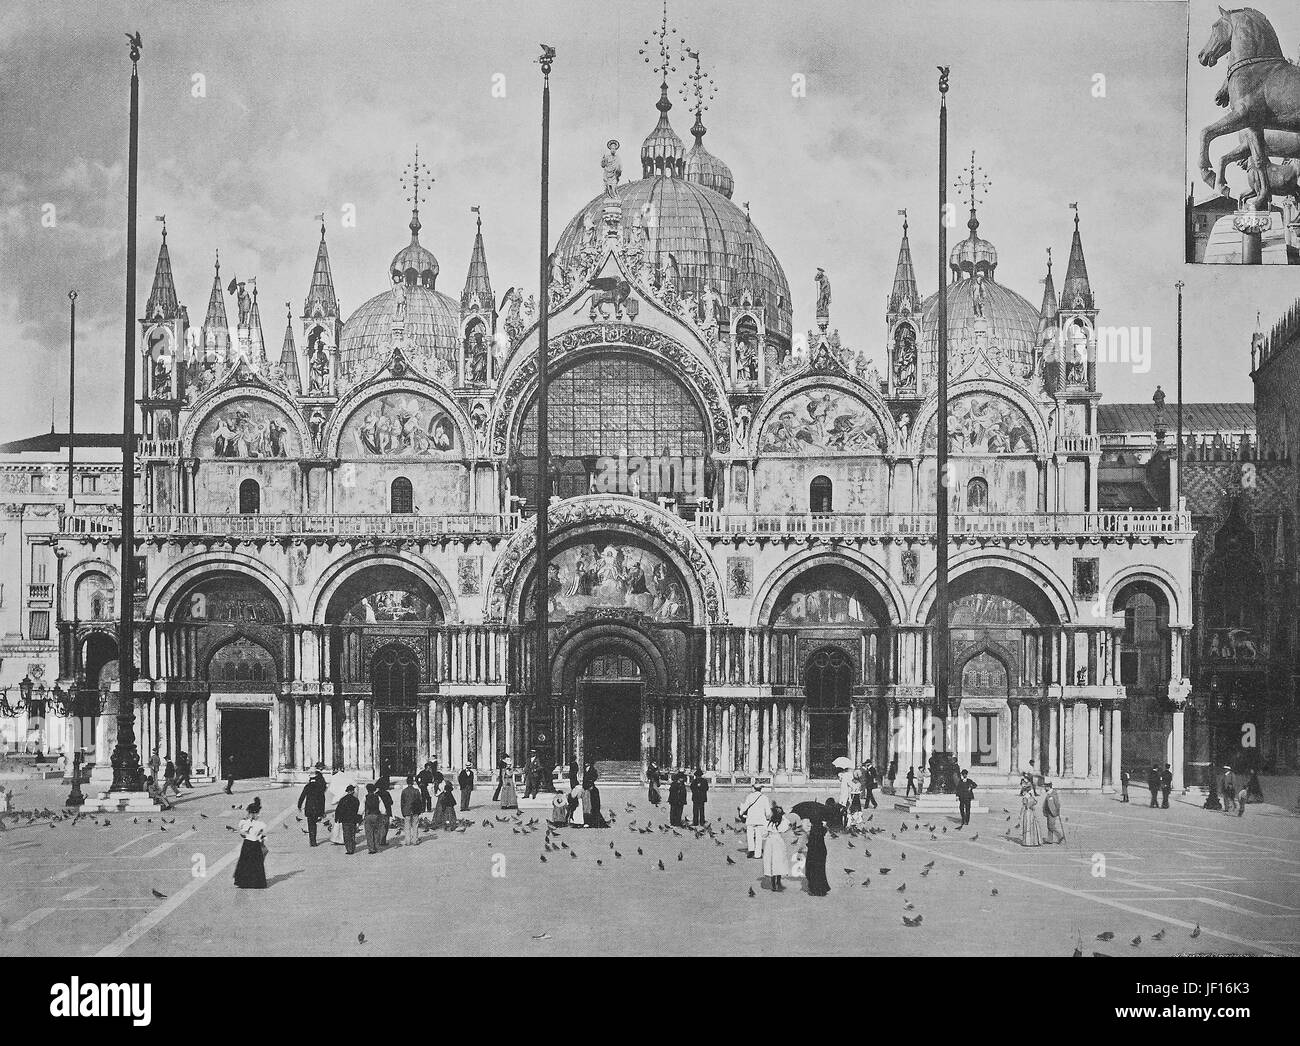 Photo historique de la façade ouest de la Basilique St Marc, Piazza San Marco, la Place Saint-Marc, Venise, Italie, amélioration numérique reproduction à partir d'un tirage original de 1890 Banque D'Images